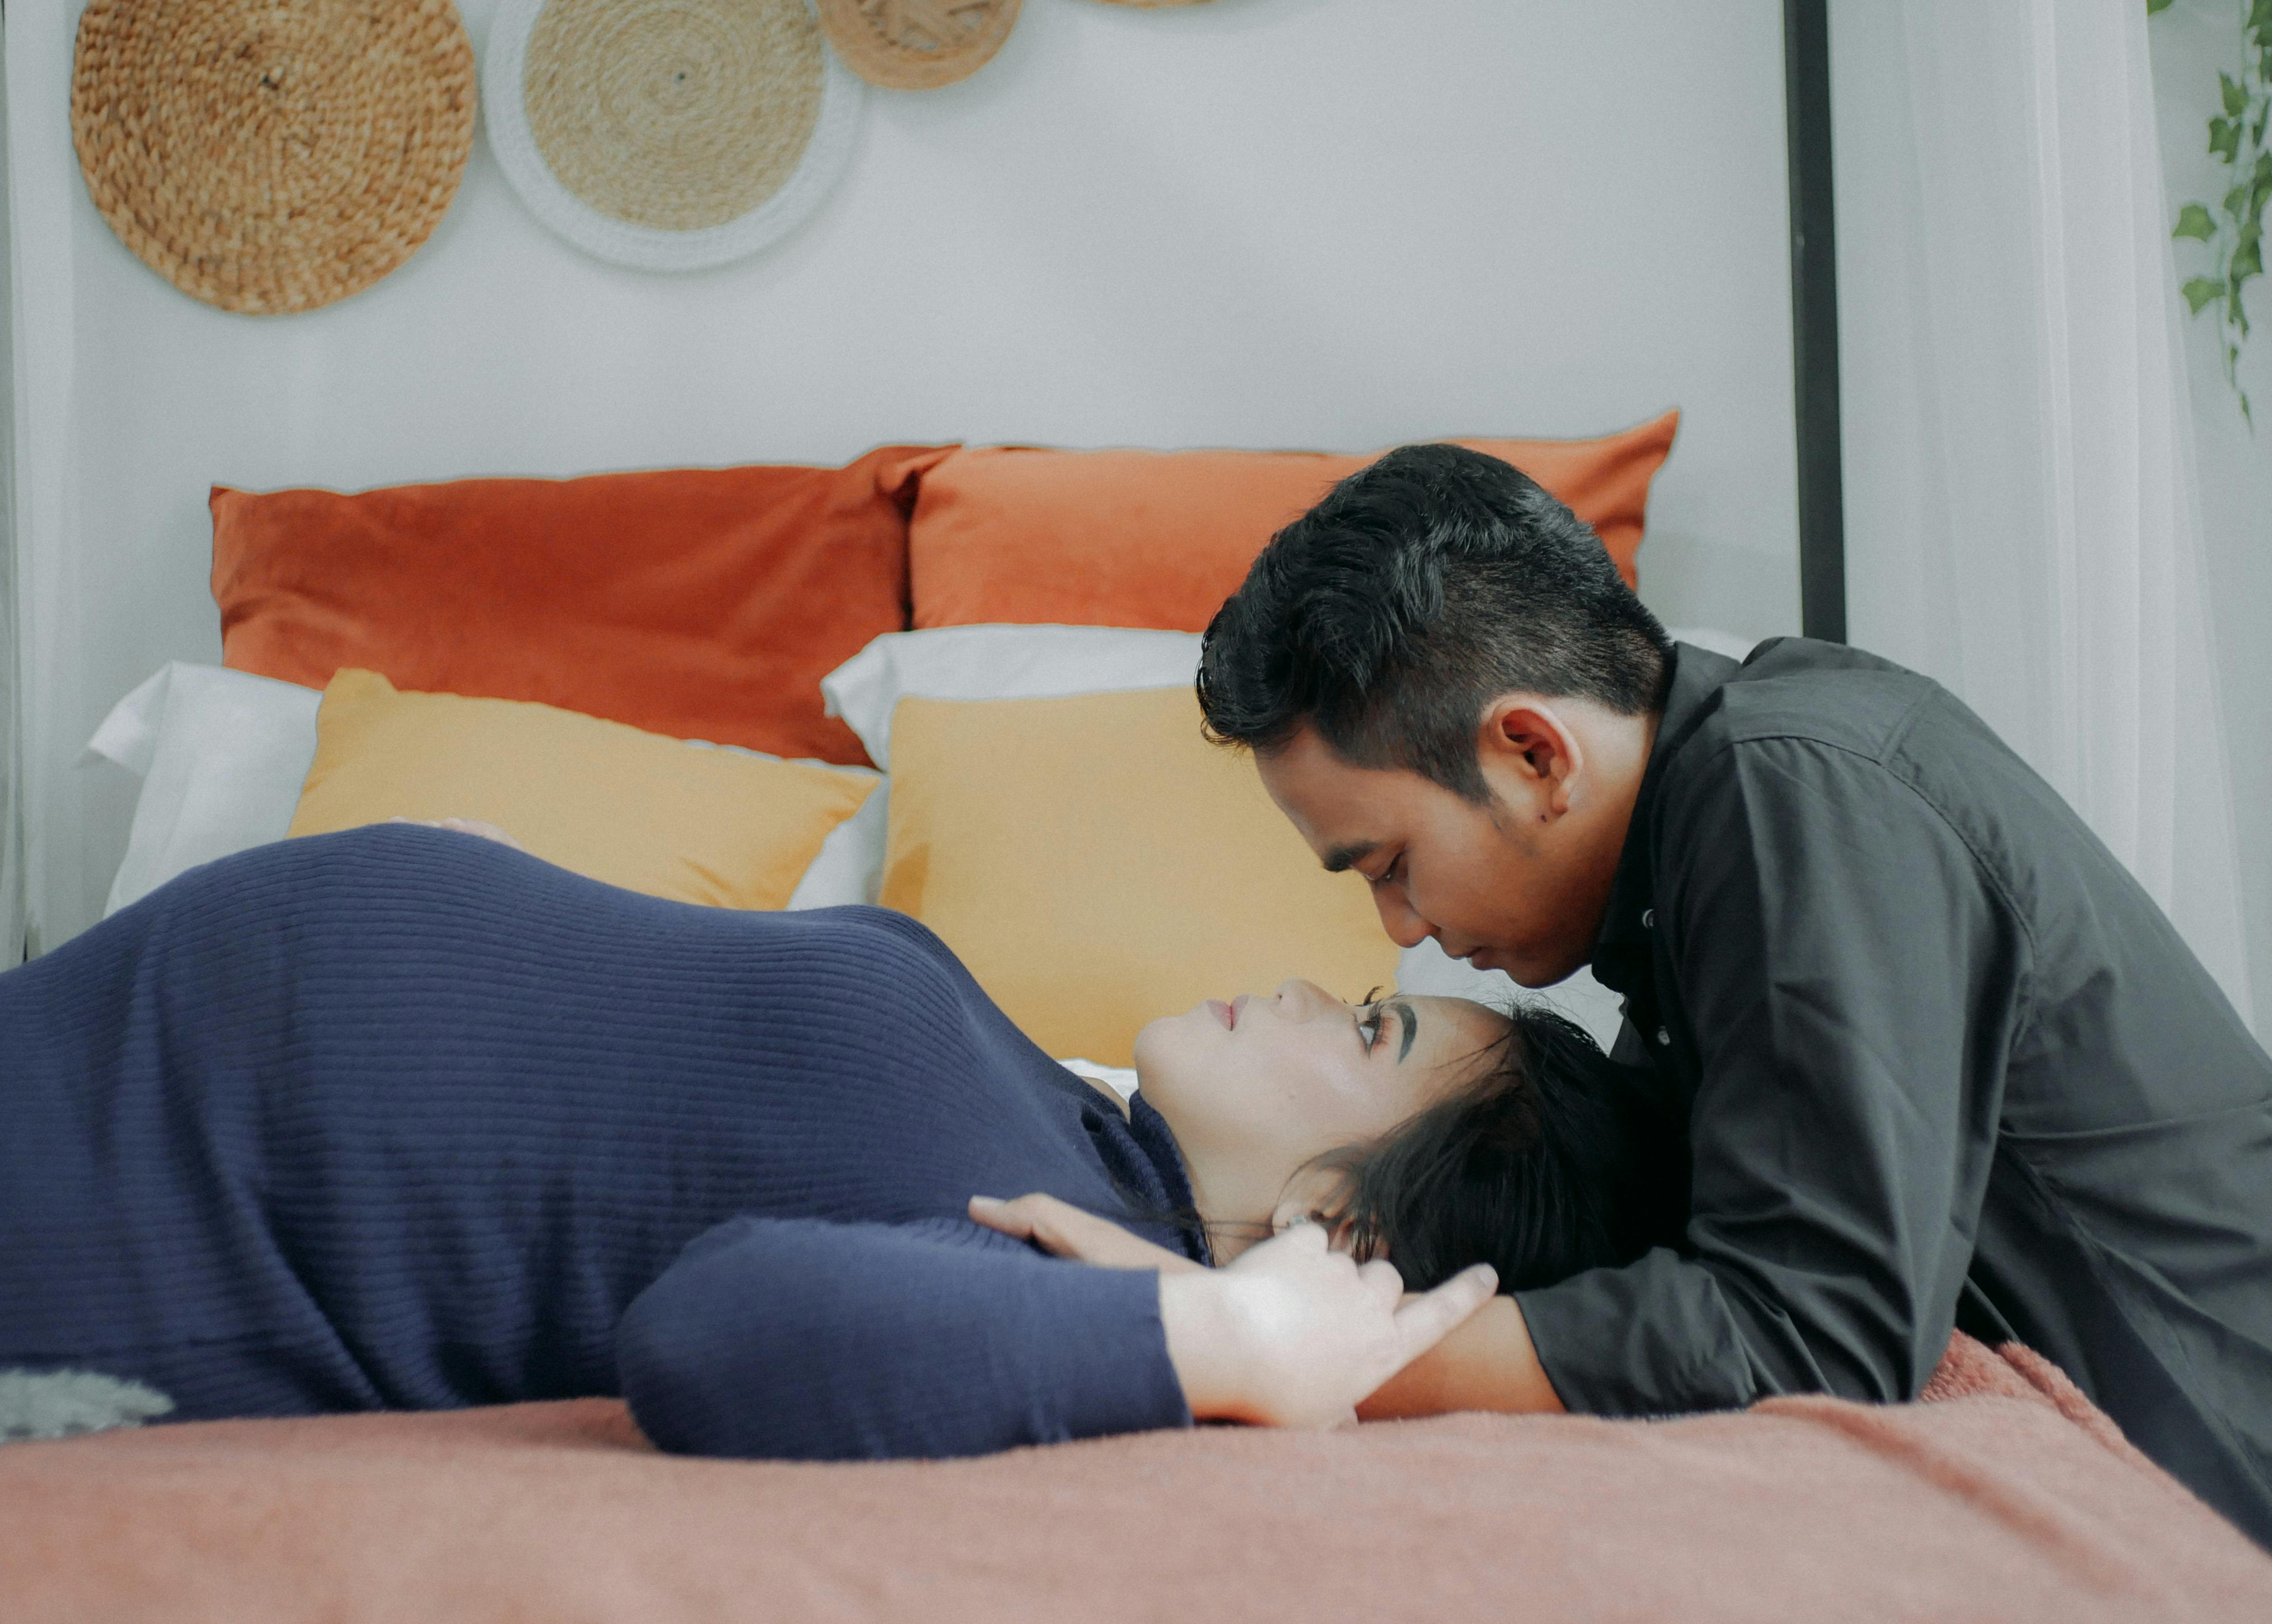 Una mujer embarazada y su marido mirándose en el dormitorio | Fuente: Pexels